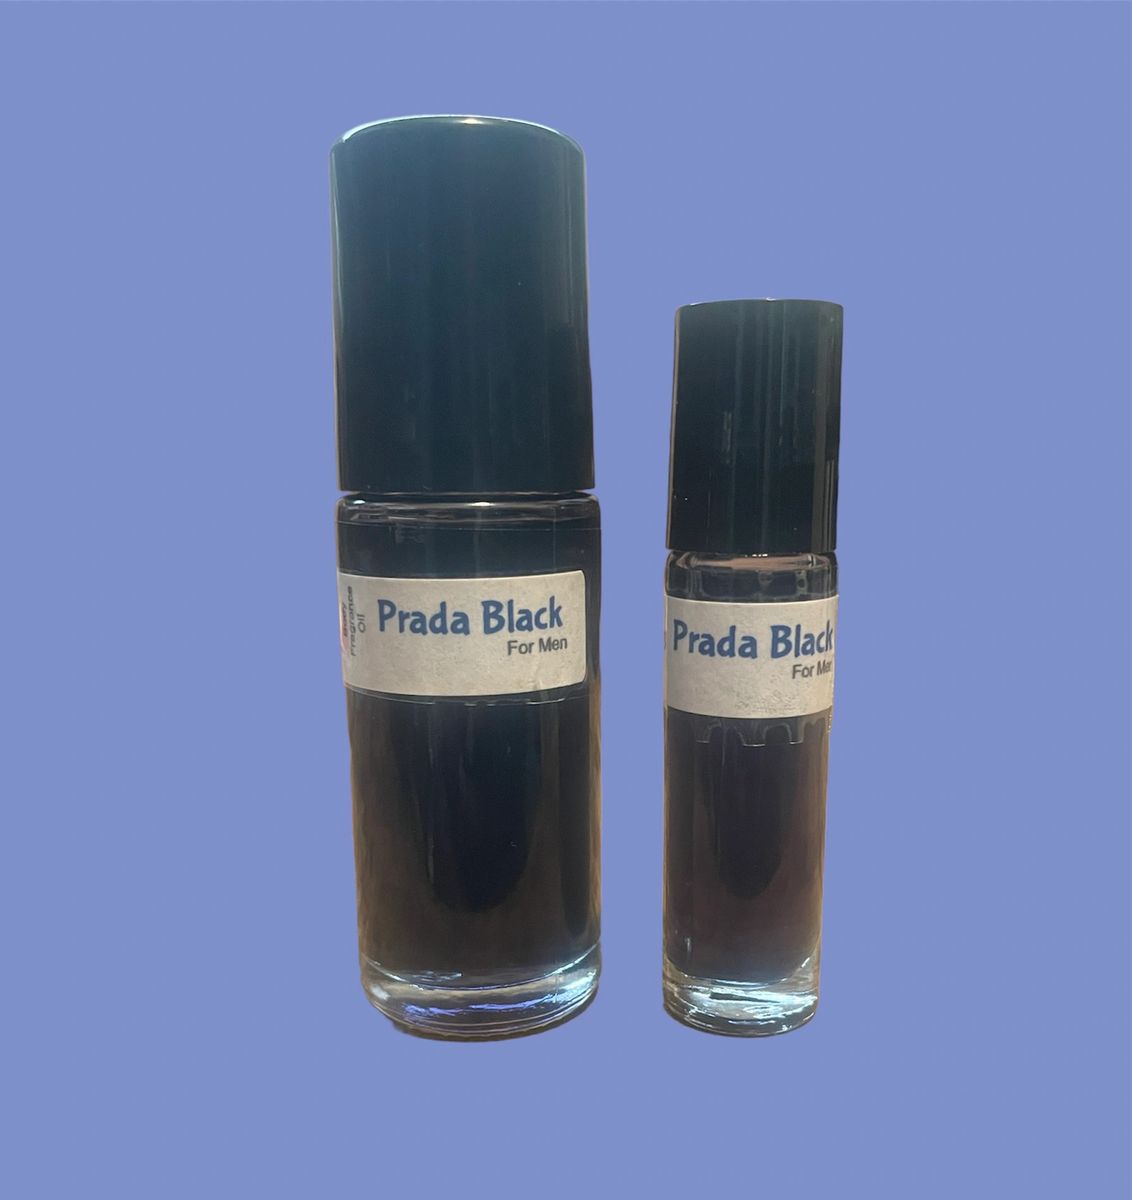 Prada Black for Men Body Fragrance Oil